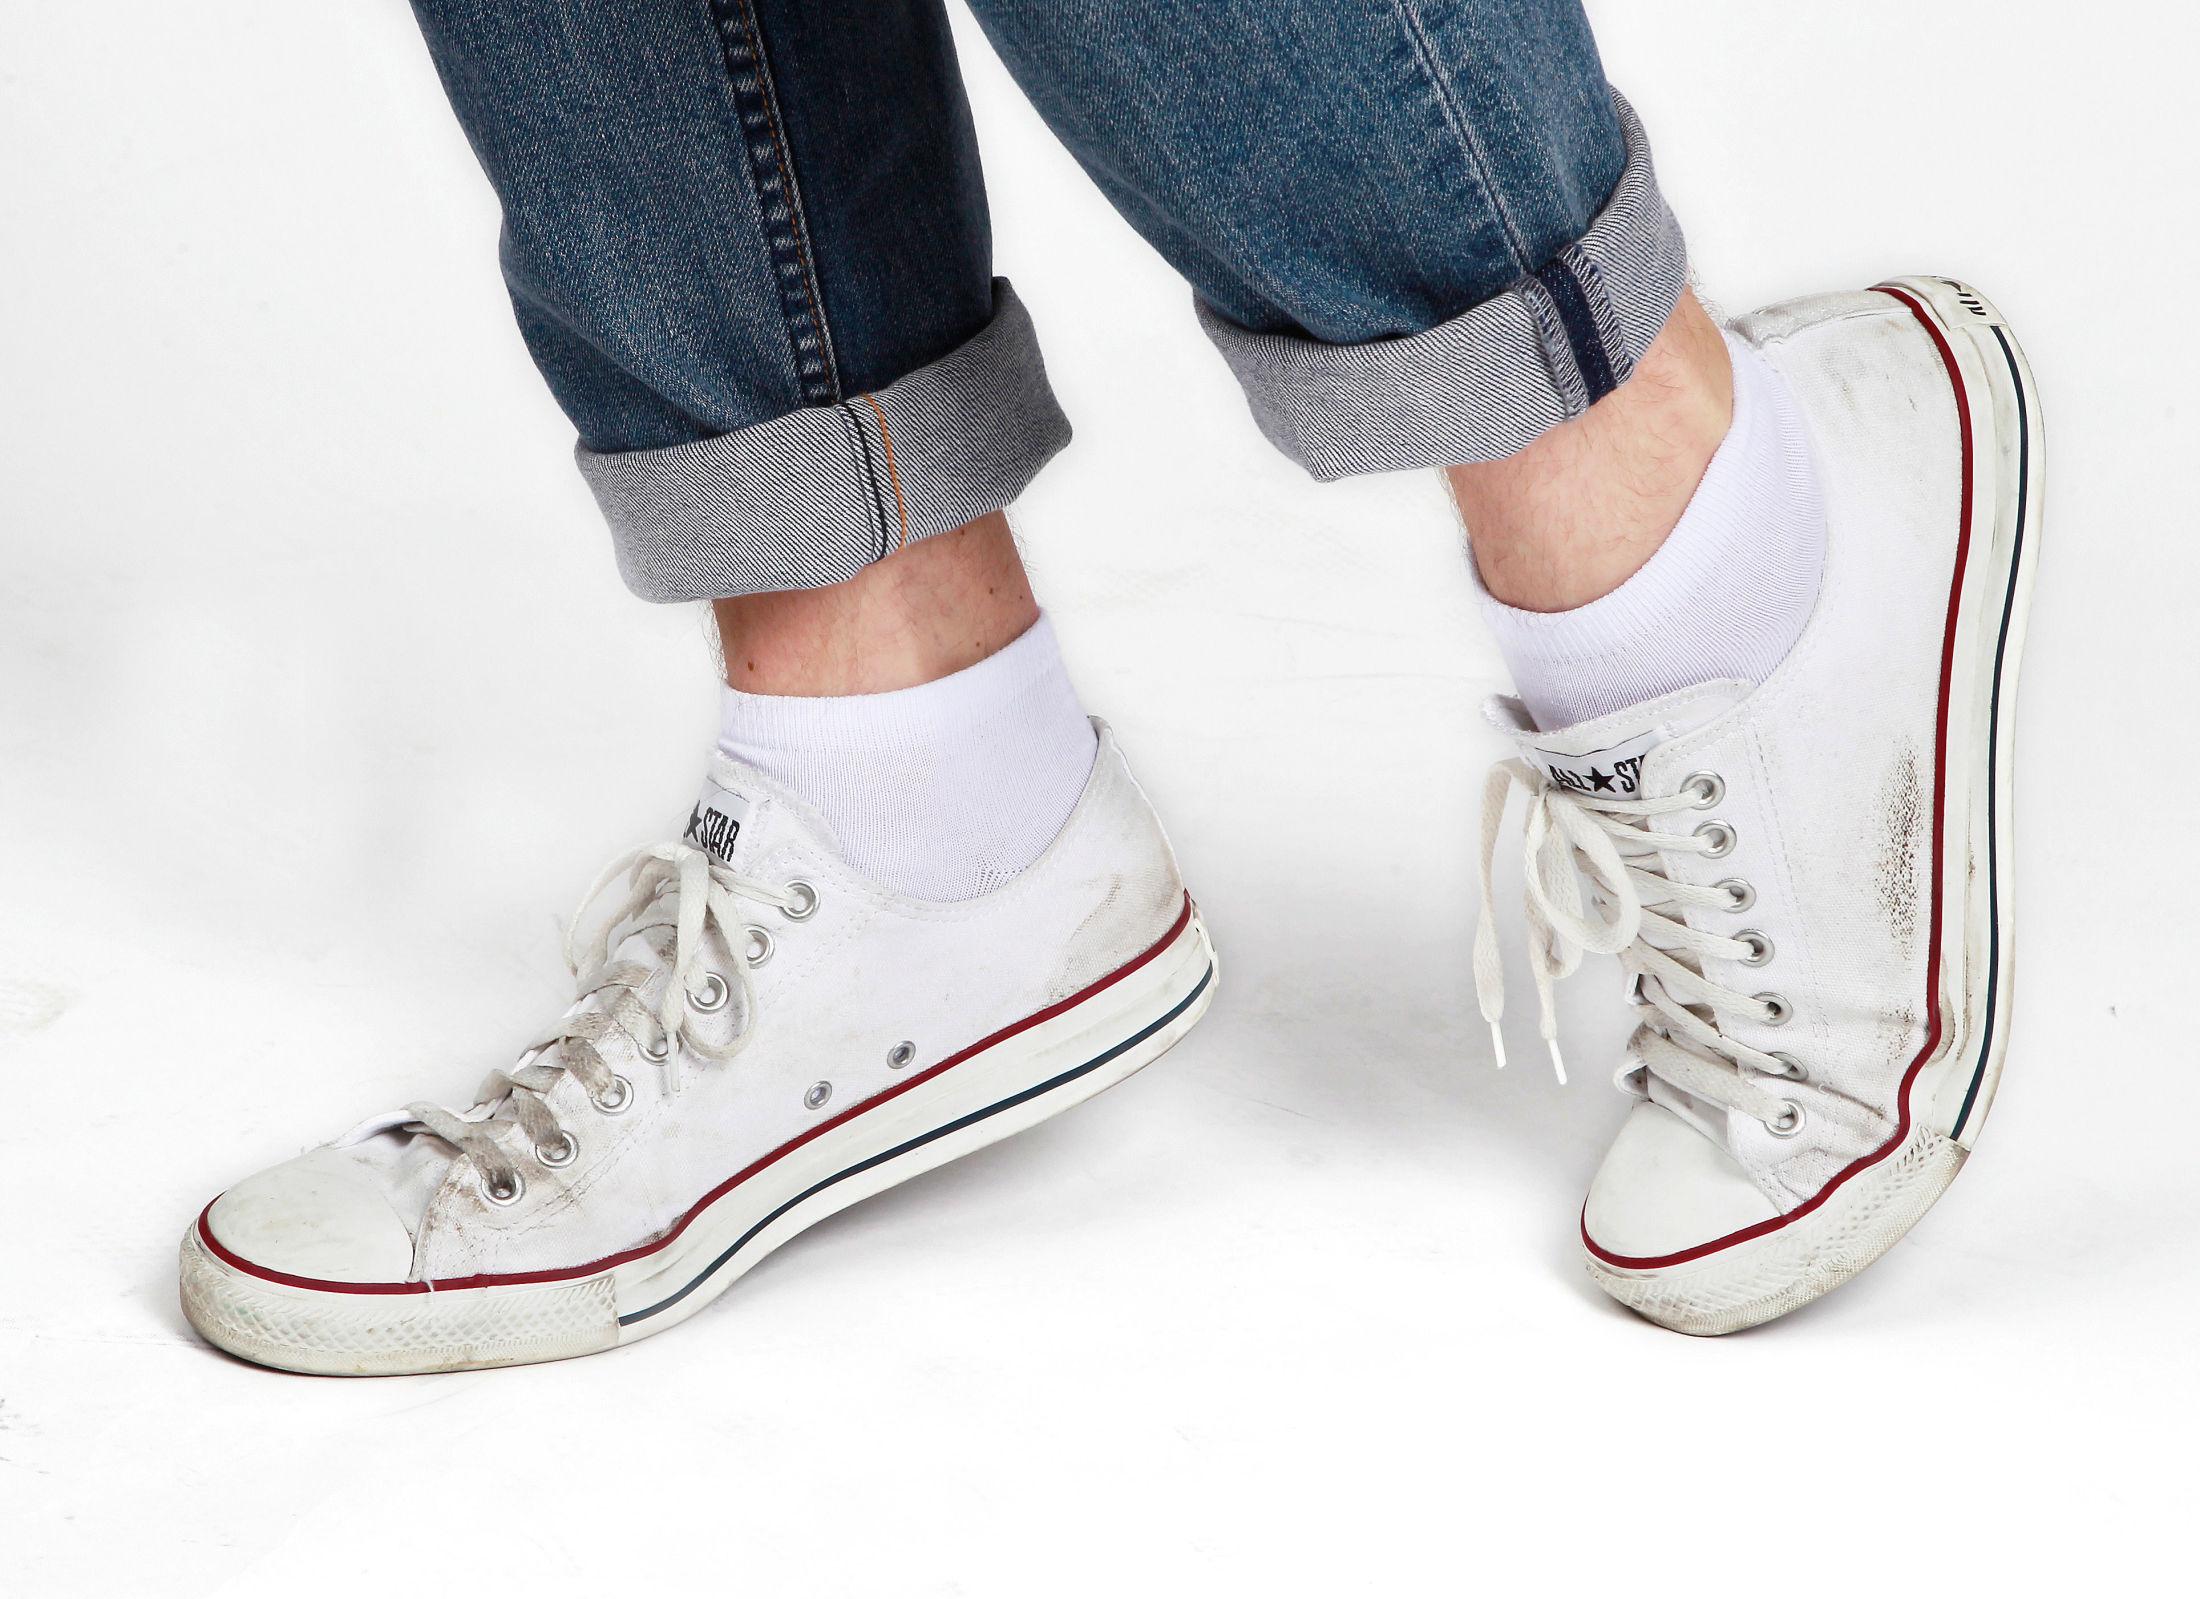 IKKE SLIK: Skitne sko og synlige sokkekanter bør unngås om du ønsker å ta deg best mulig ut i sommer. Foto: Nils Bjåland / VG